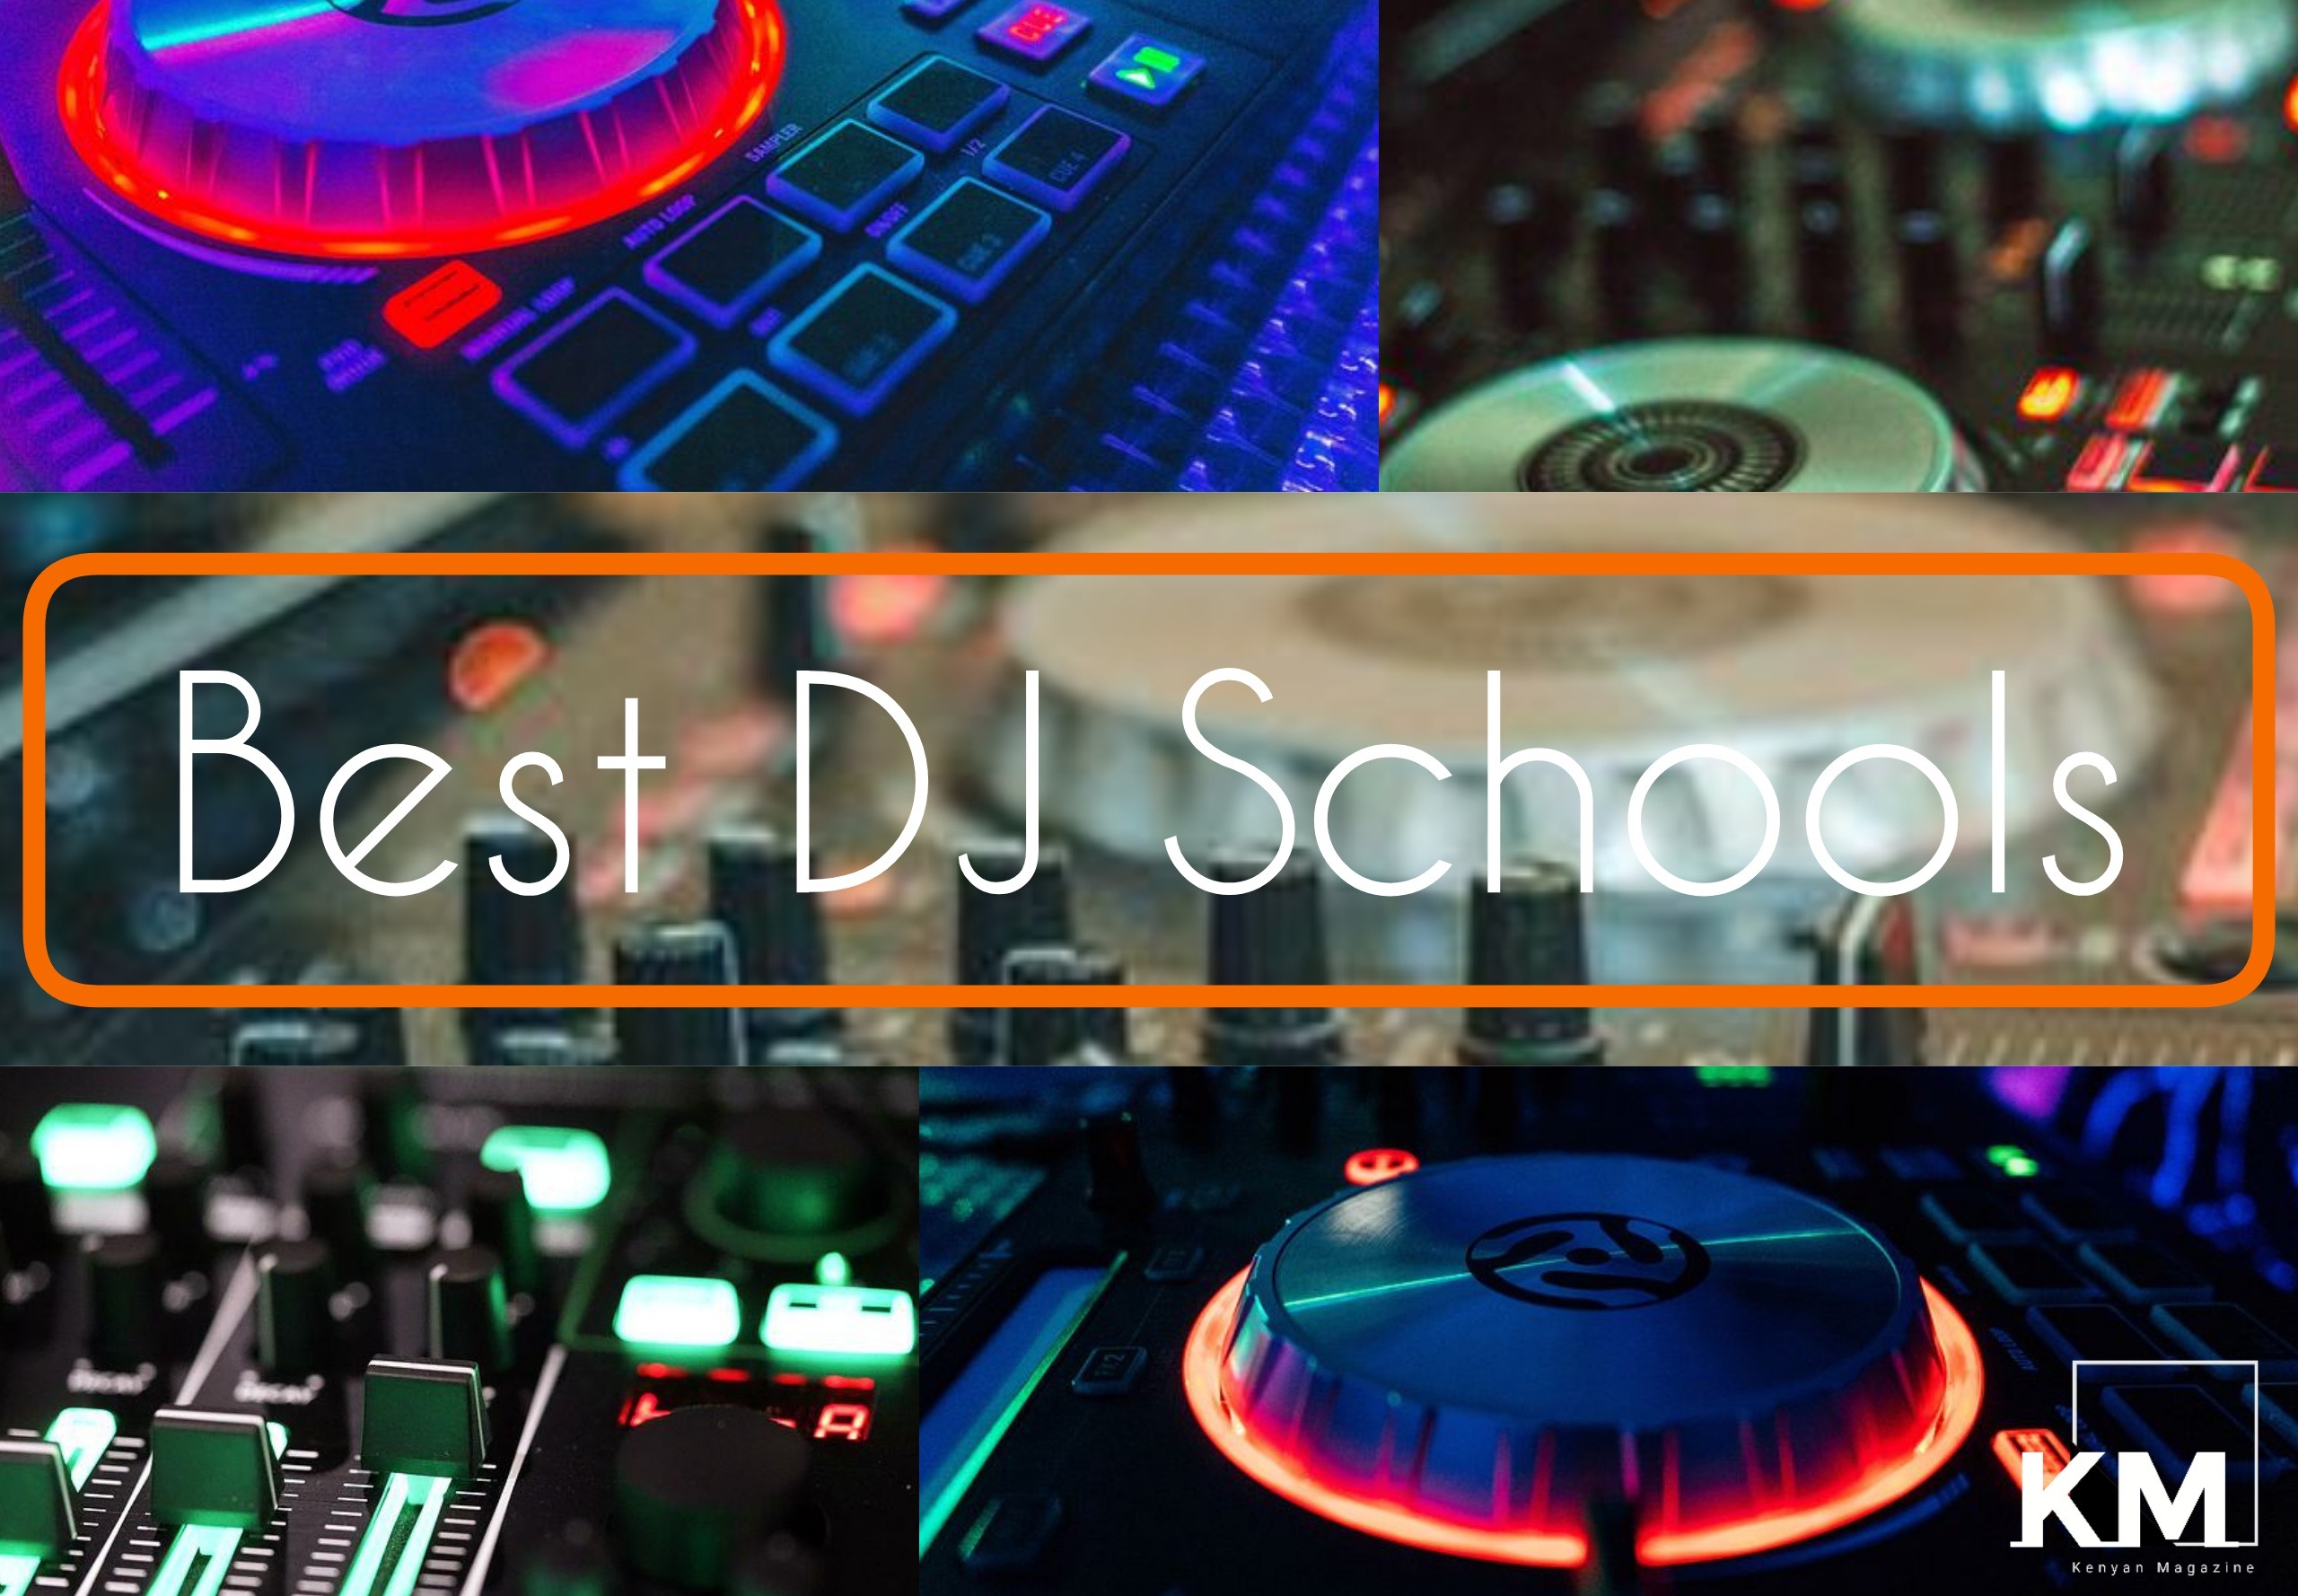 Best DJ Schools in Kenya